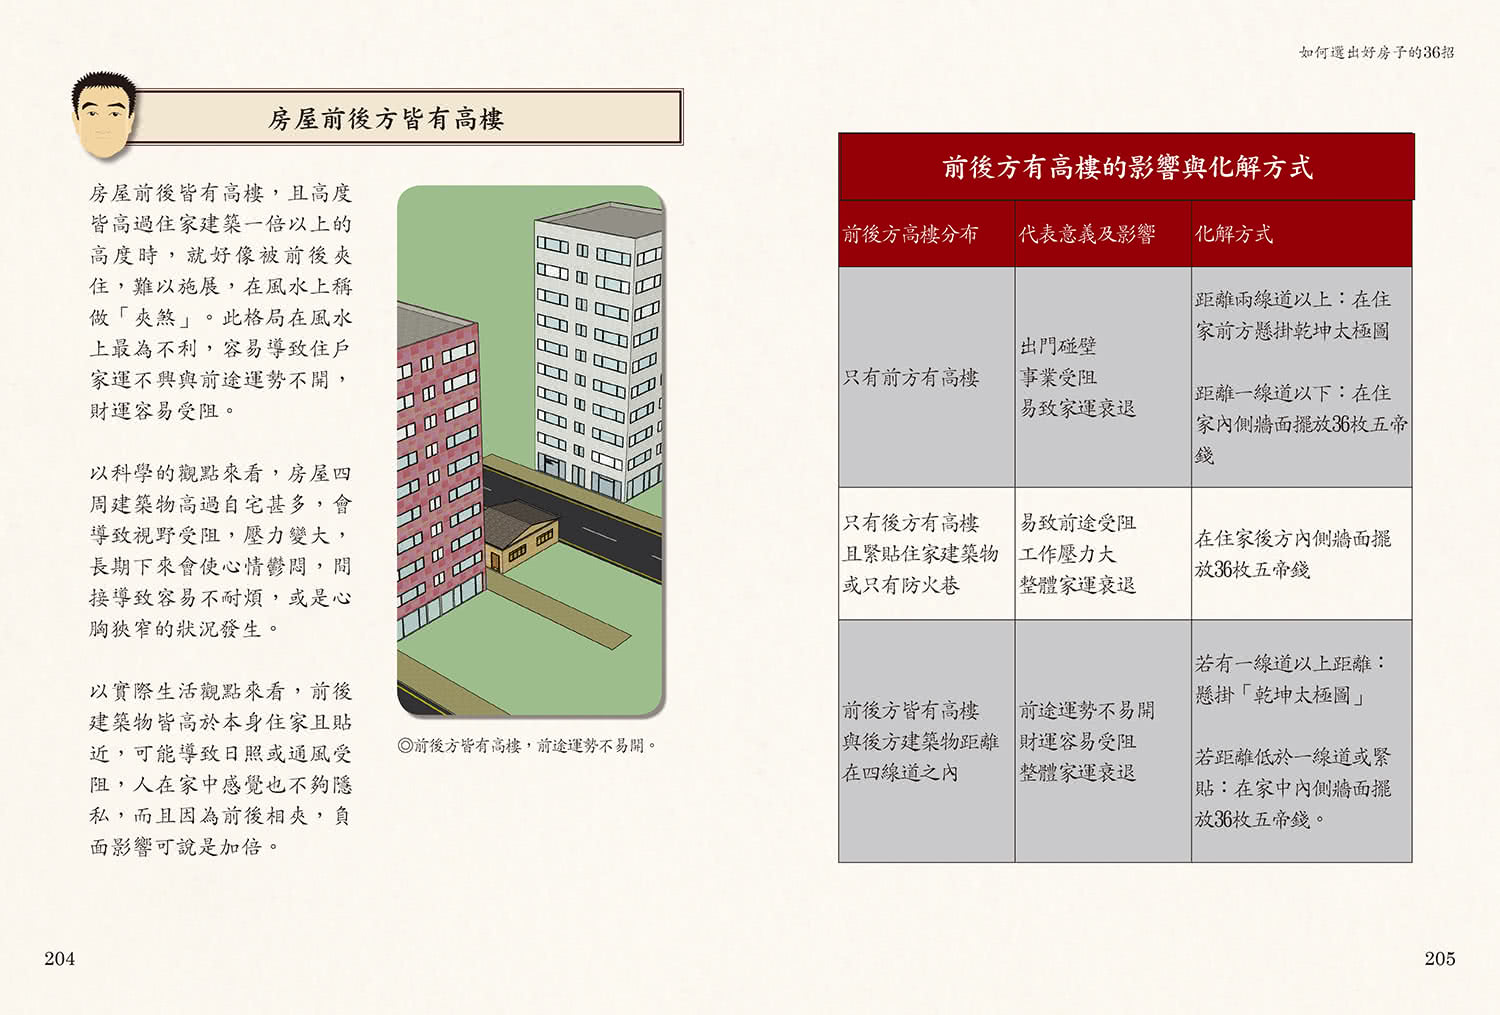 謝沅瑾最專業的開運居家風水：如何選出好房子的36招